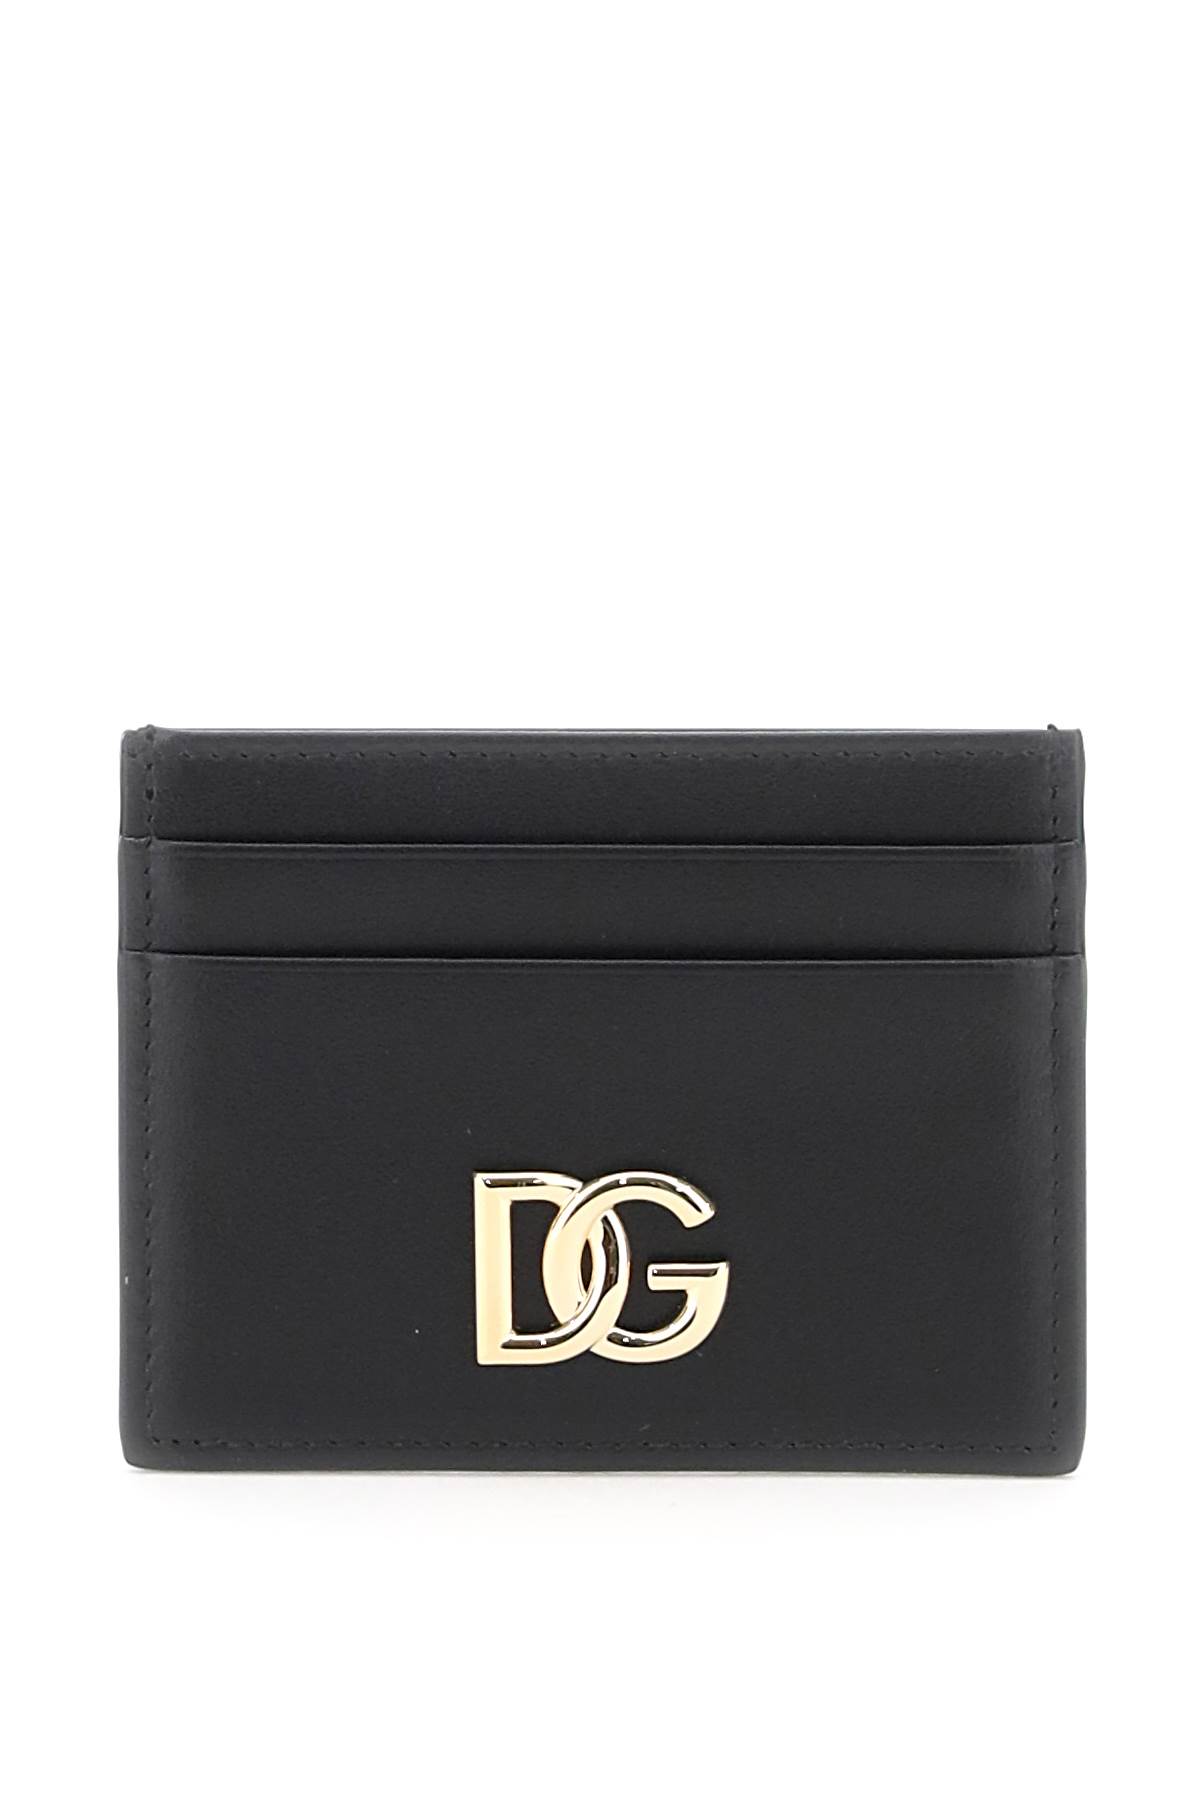 Dolce & Gabbana Dg Cardholder In Black